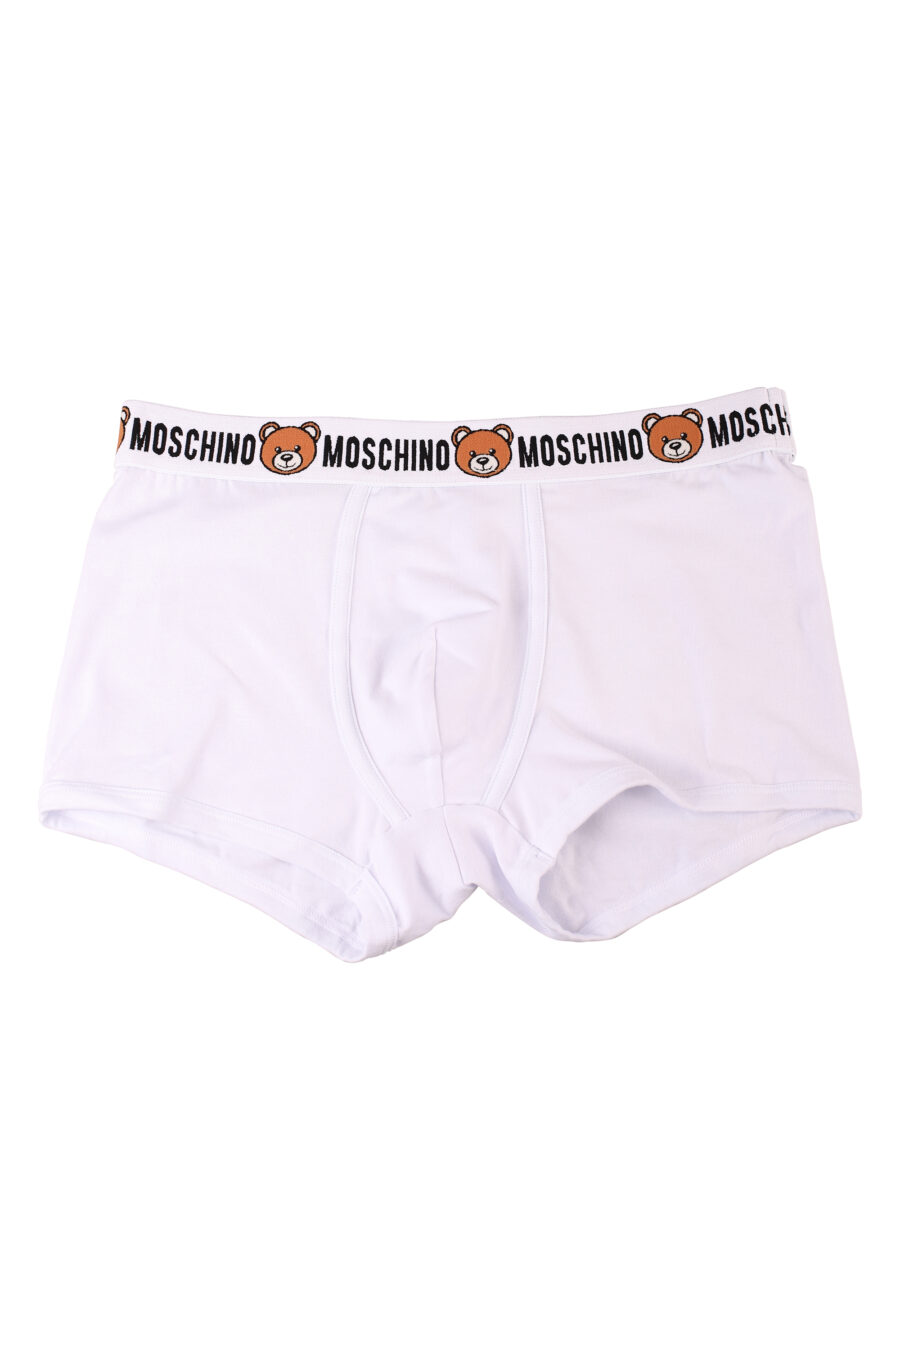 Pack de dos boxers blancos con logo oso "underbear" - IMG 8553